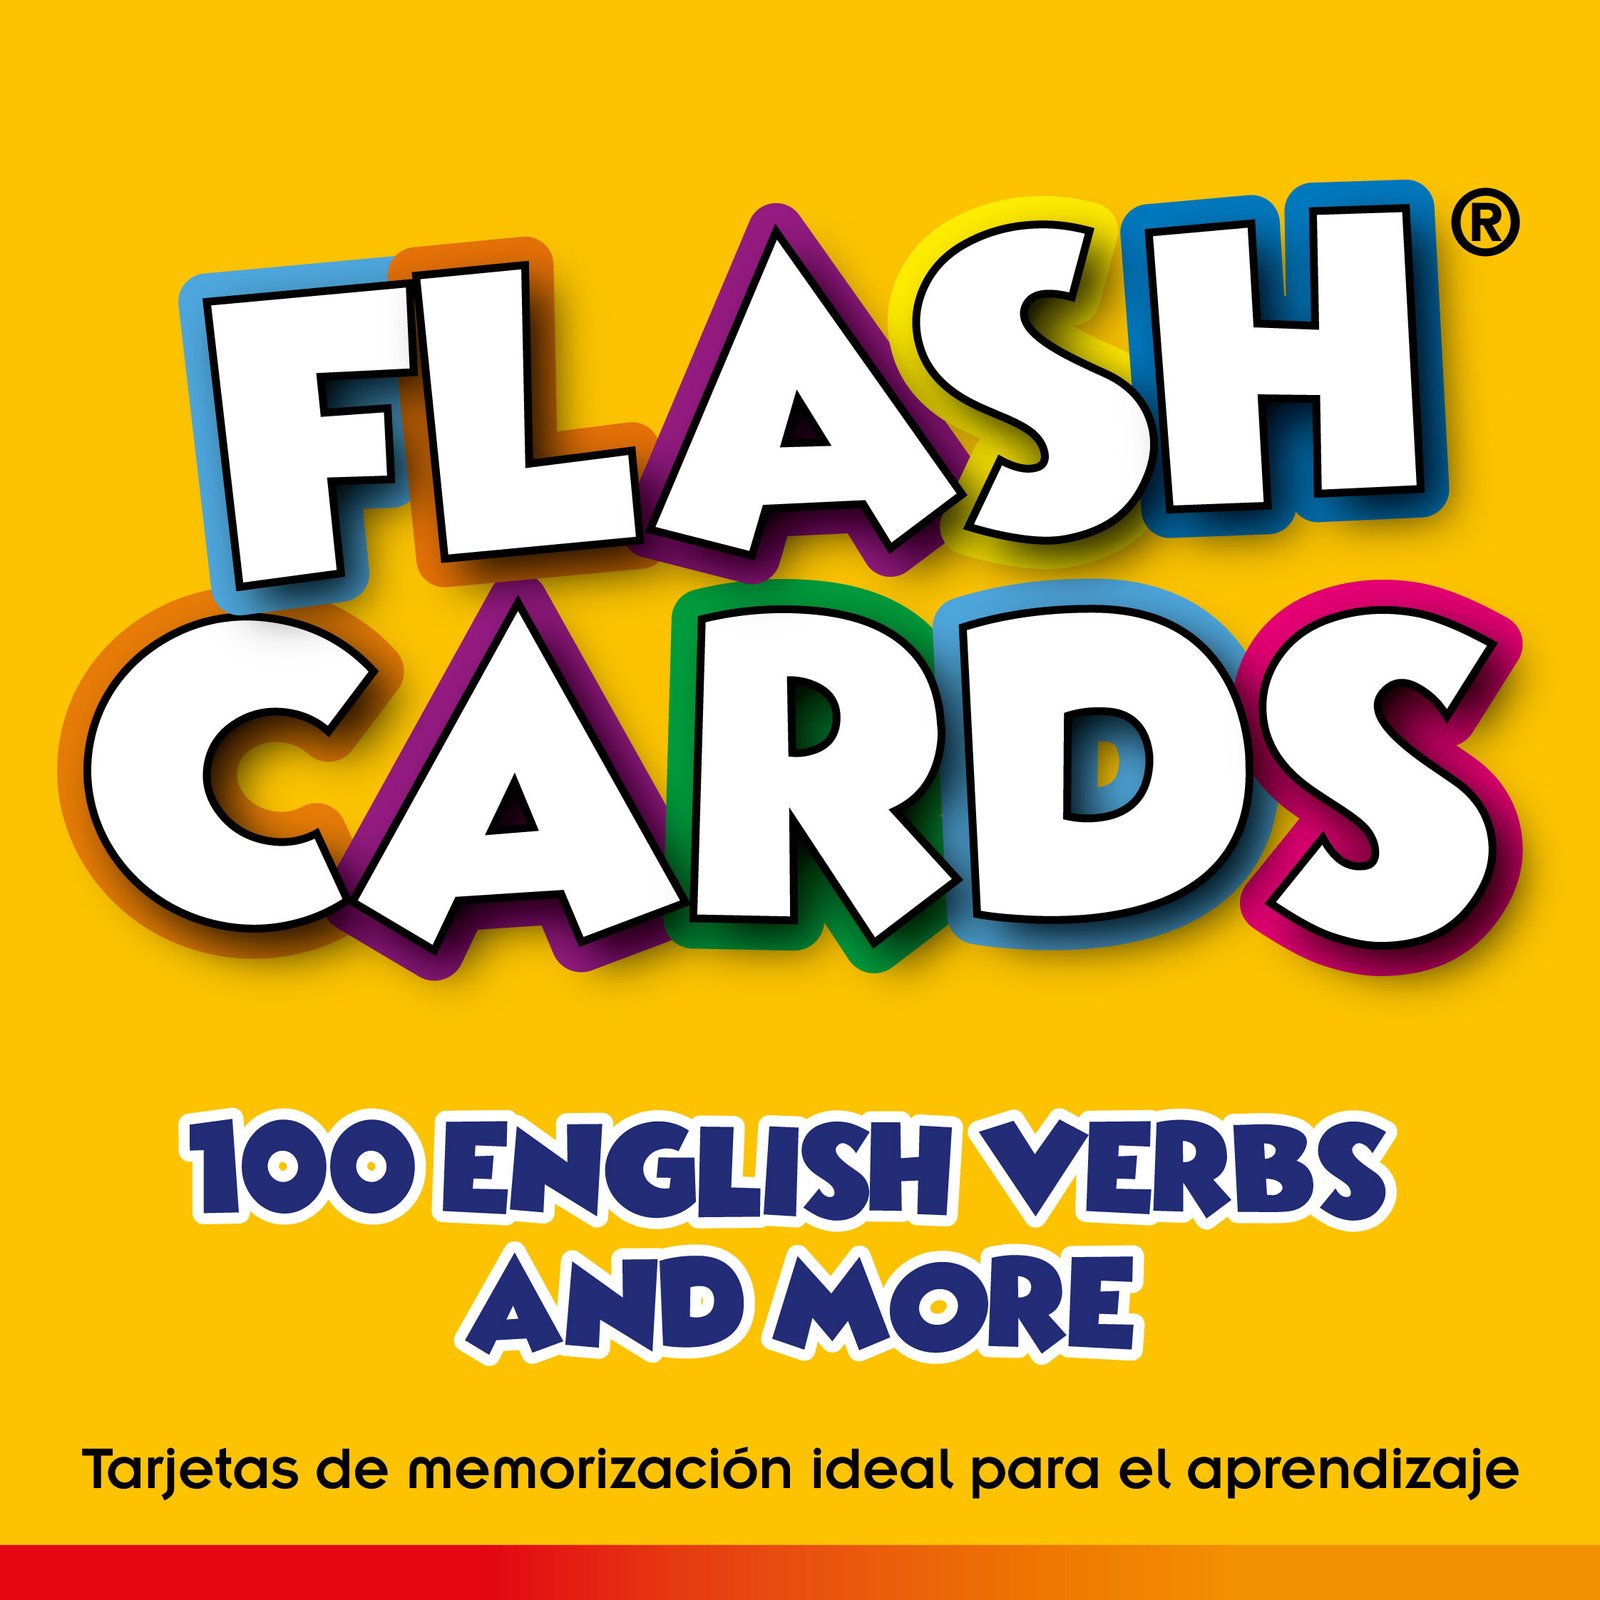 Flash Verbs Cards 100 English Verbs